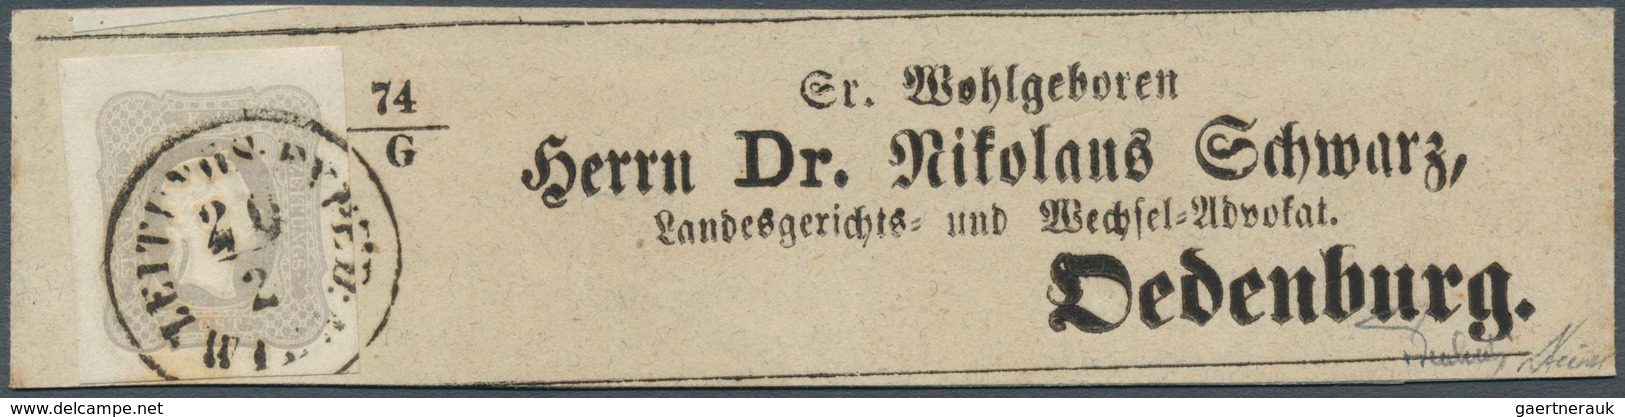 Österreich: 1861, (1,05 Kreuzer) Hellgrauviolett Zeitungsmarke, Allseits Breit- Bis überrandig, Entw - Sonstige & Ohne Zuordnung